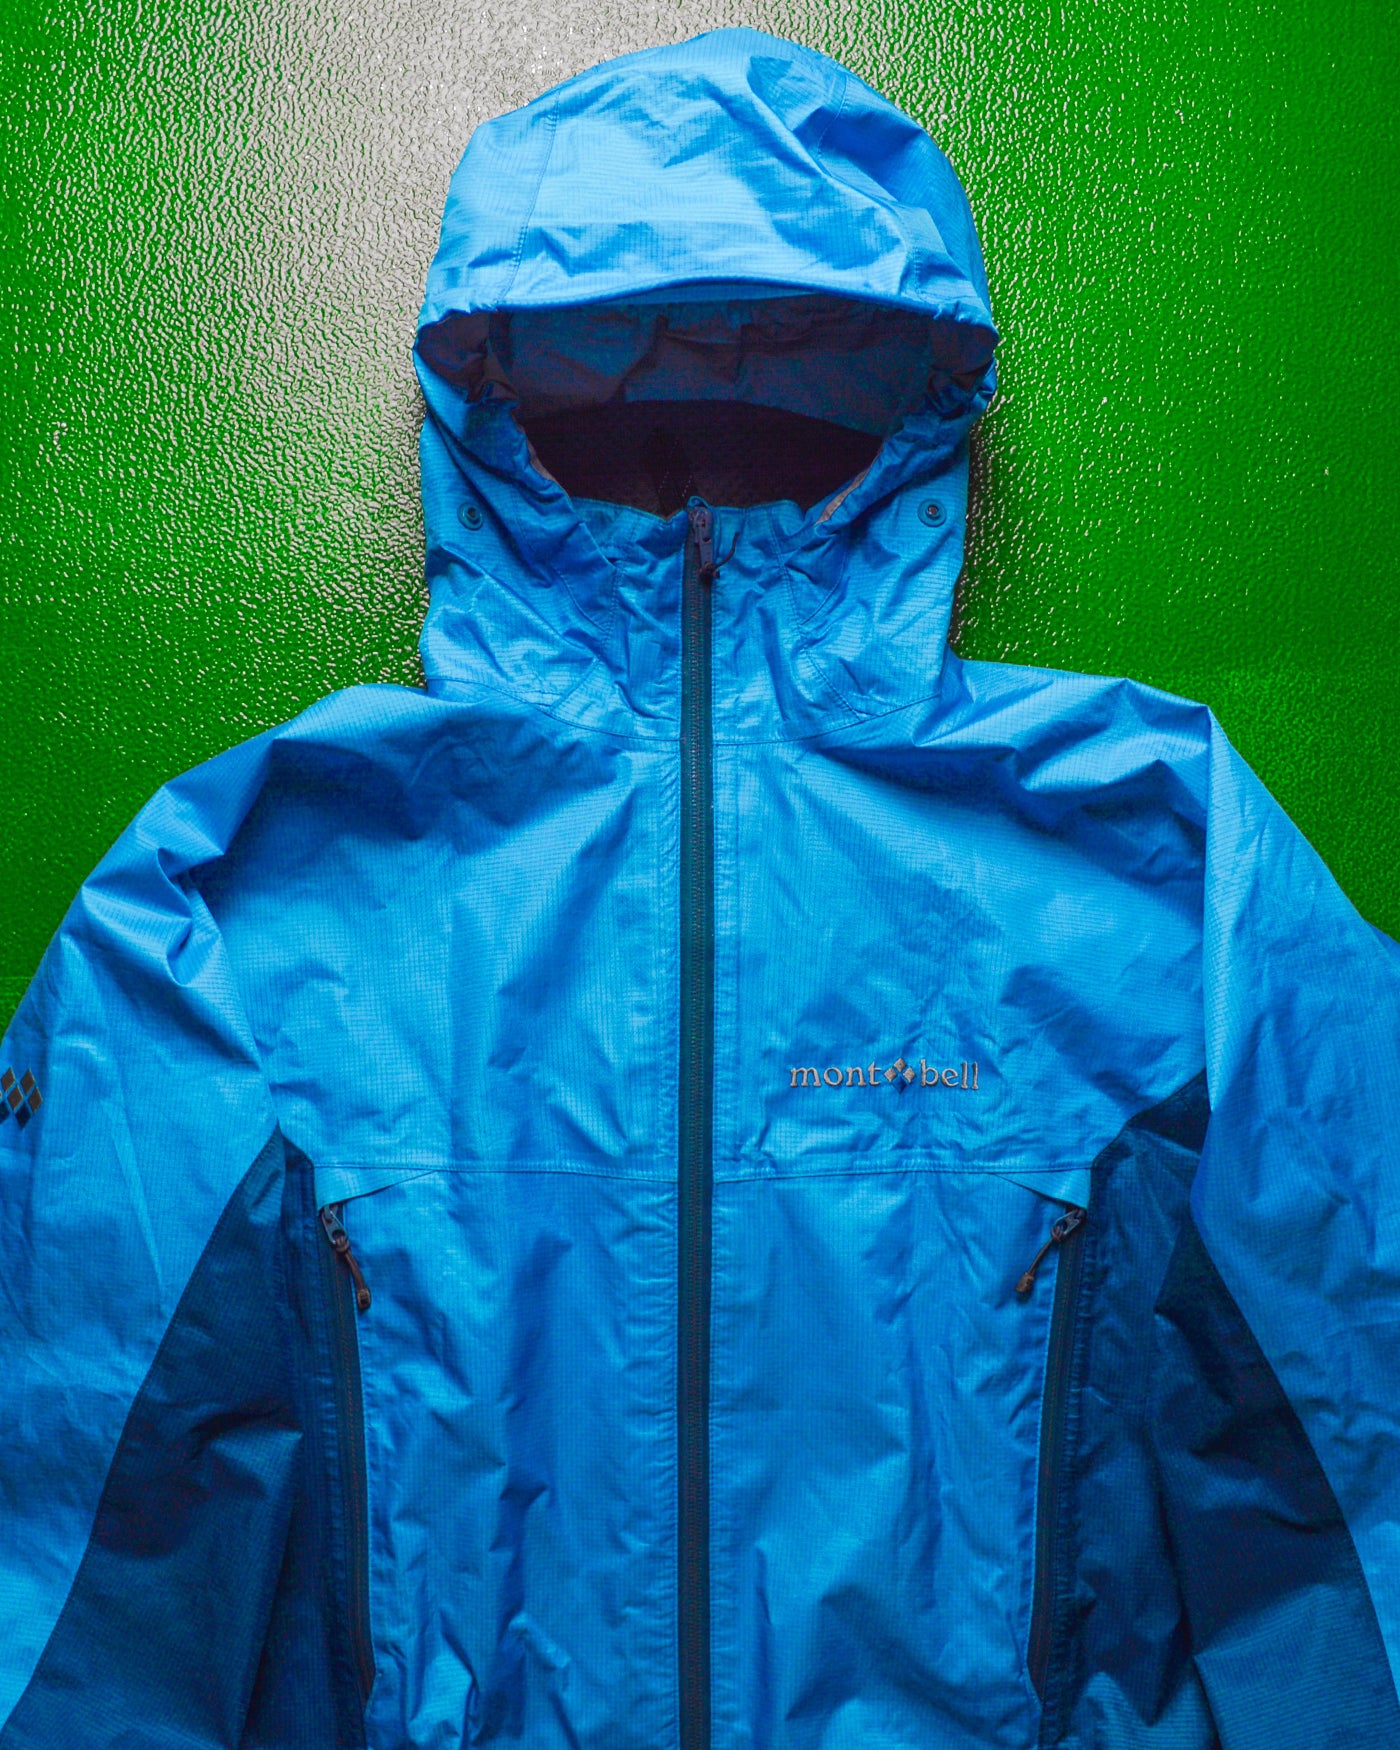 6,600円00s montbell GORE-TEX shell jacket